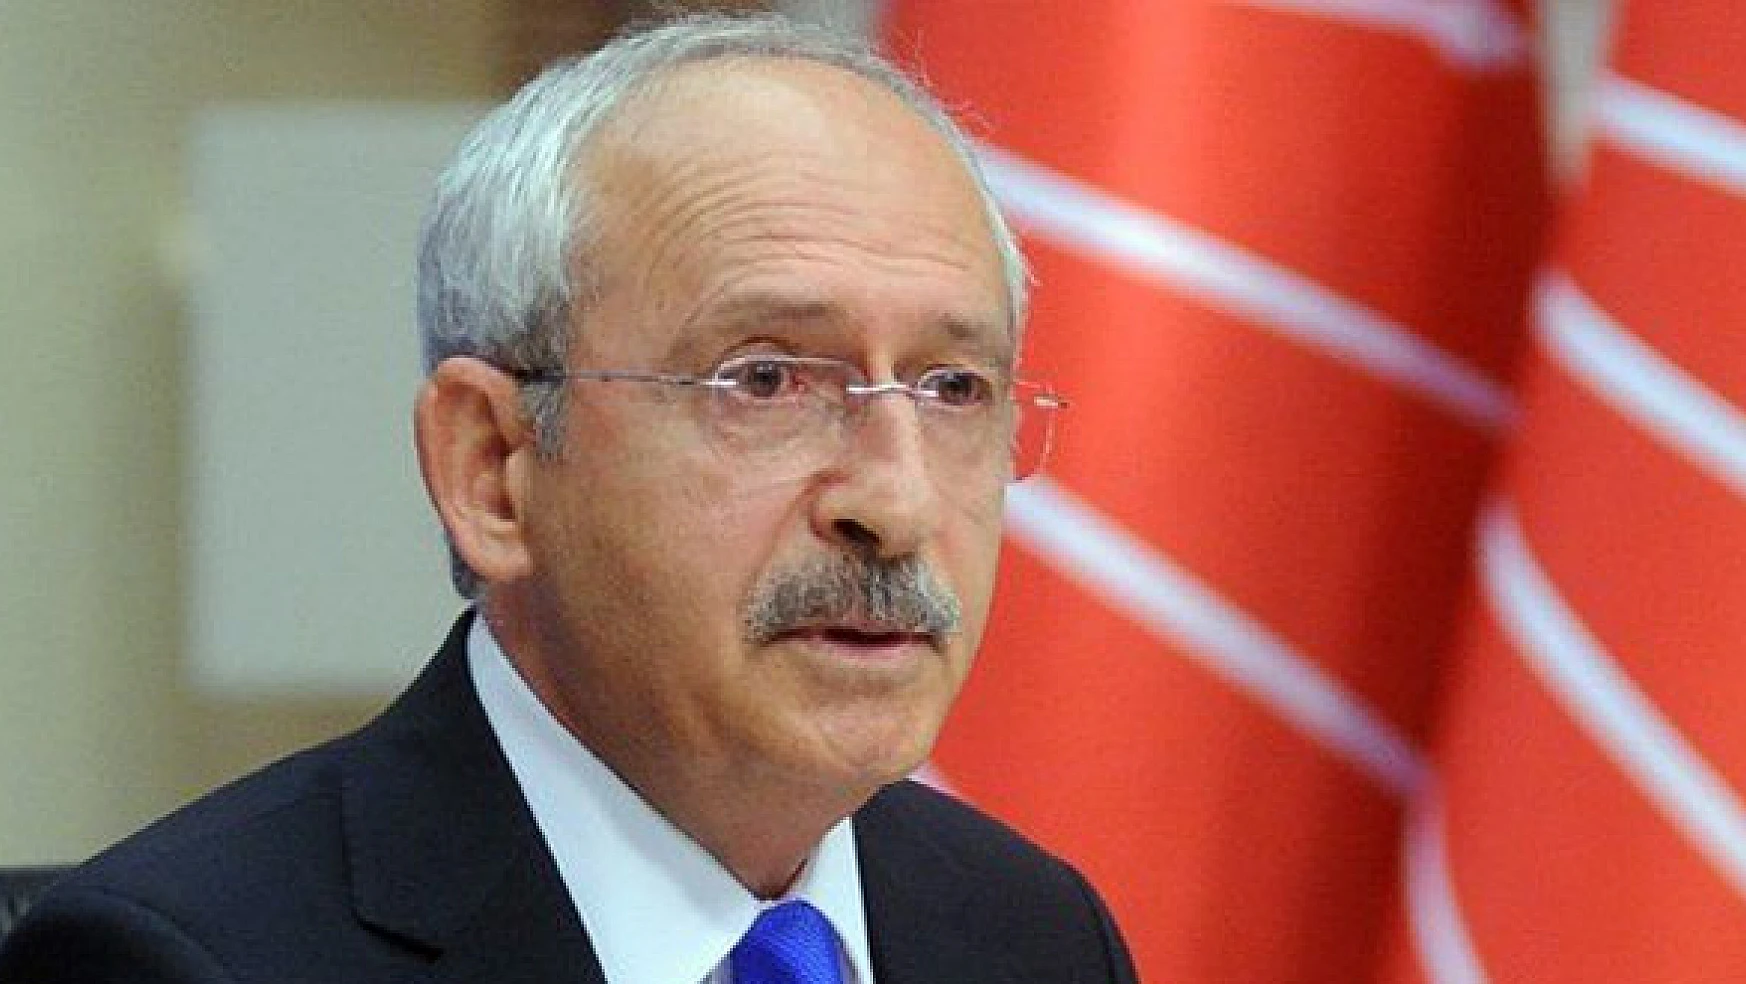 Kılıçdaroğlu: AKP ile koalisyon açıkladığımız 14 ilkeye bağlı